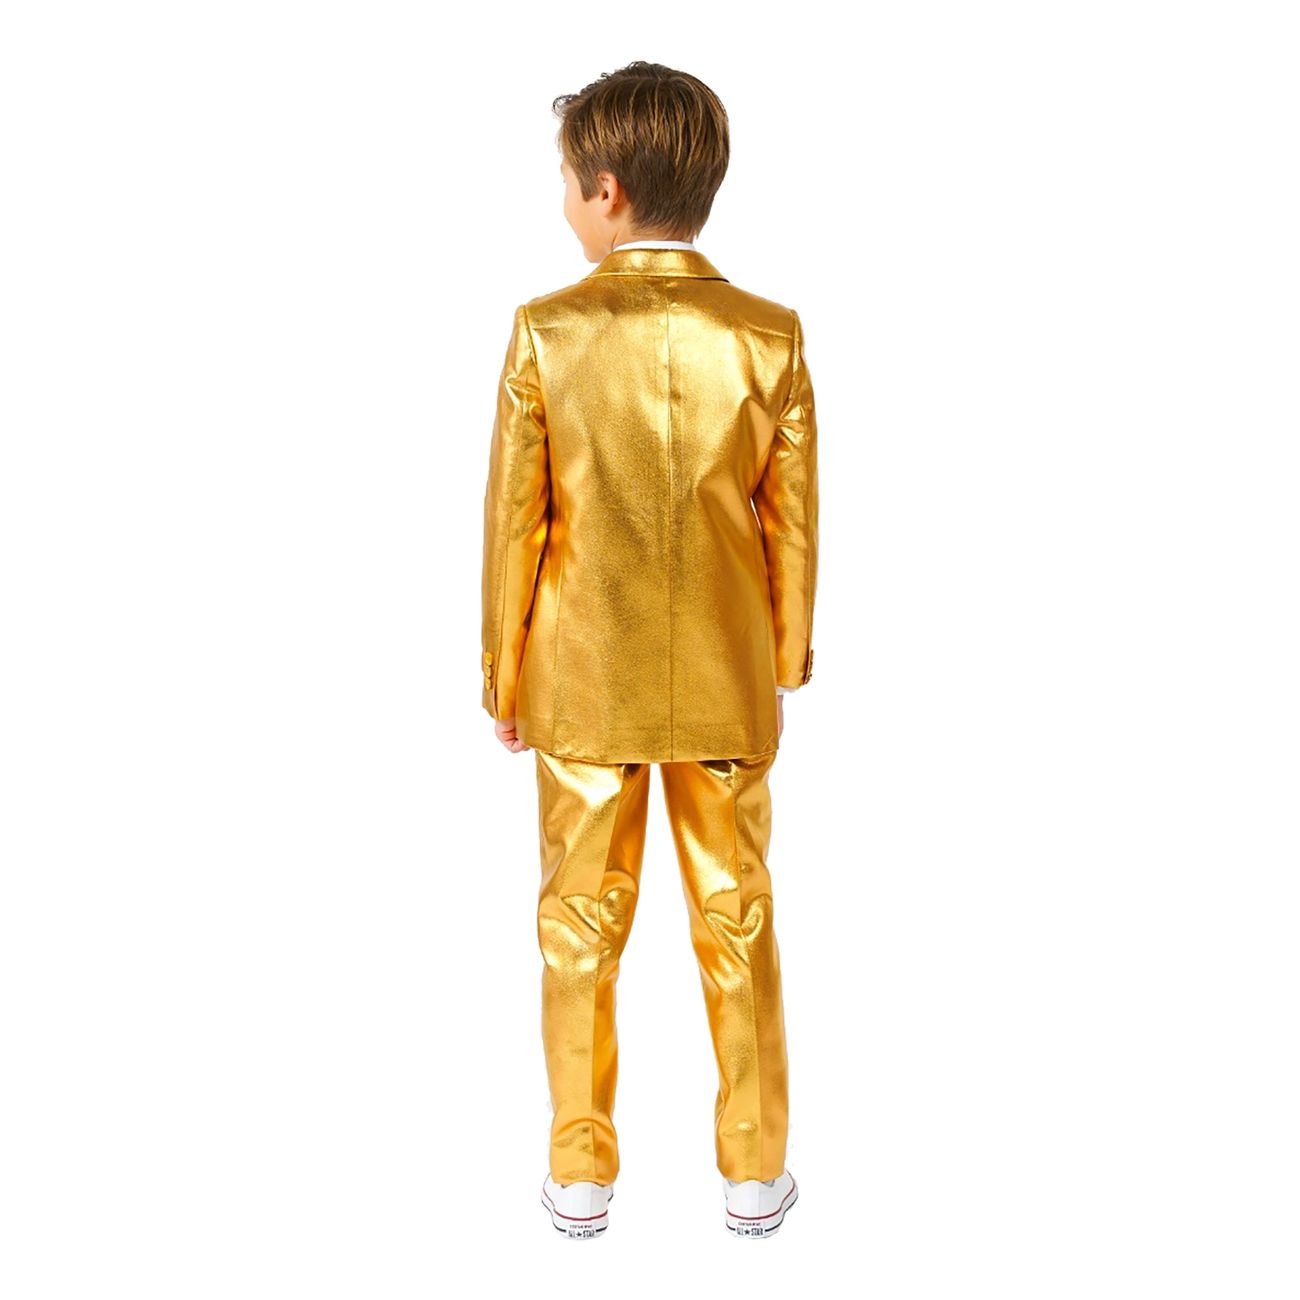 opposuits-boys-groovy-gold-kostym-88939-2